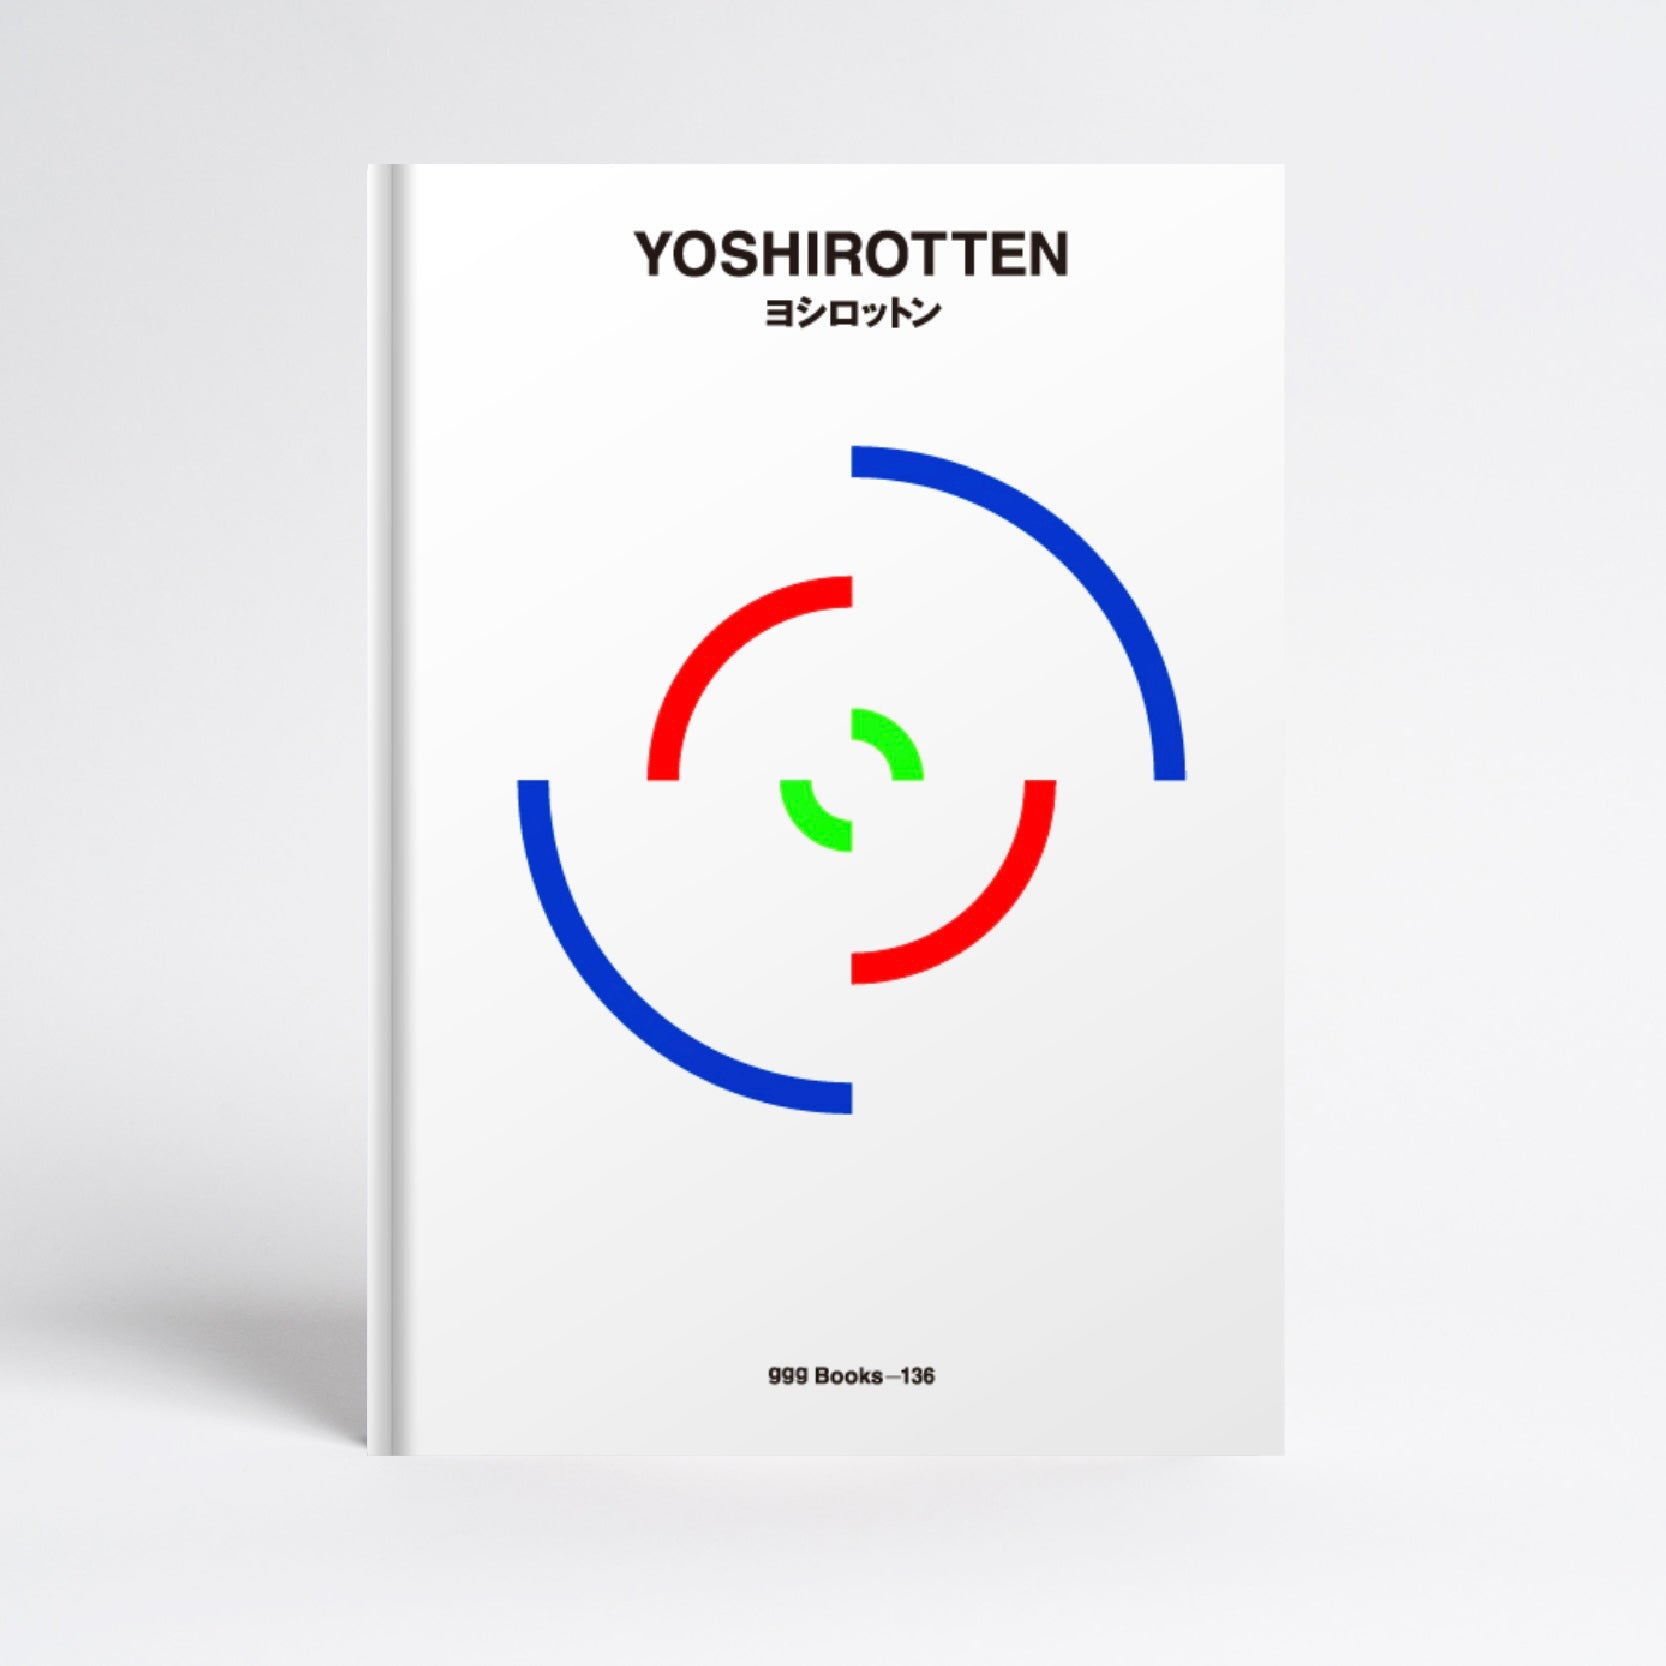 GASBOOK 33 YOSHIROTTEN + gggBooks-136